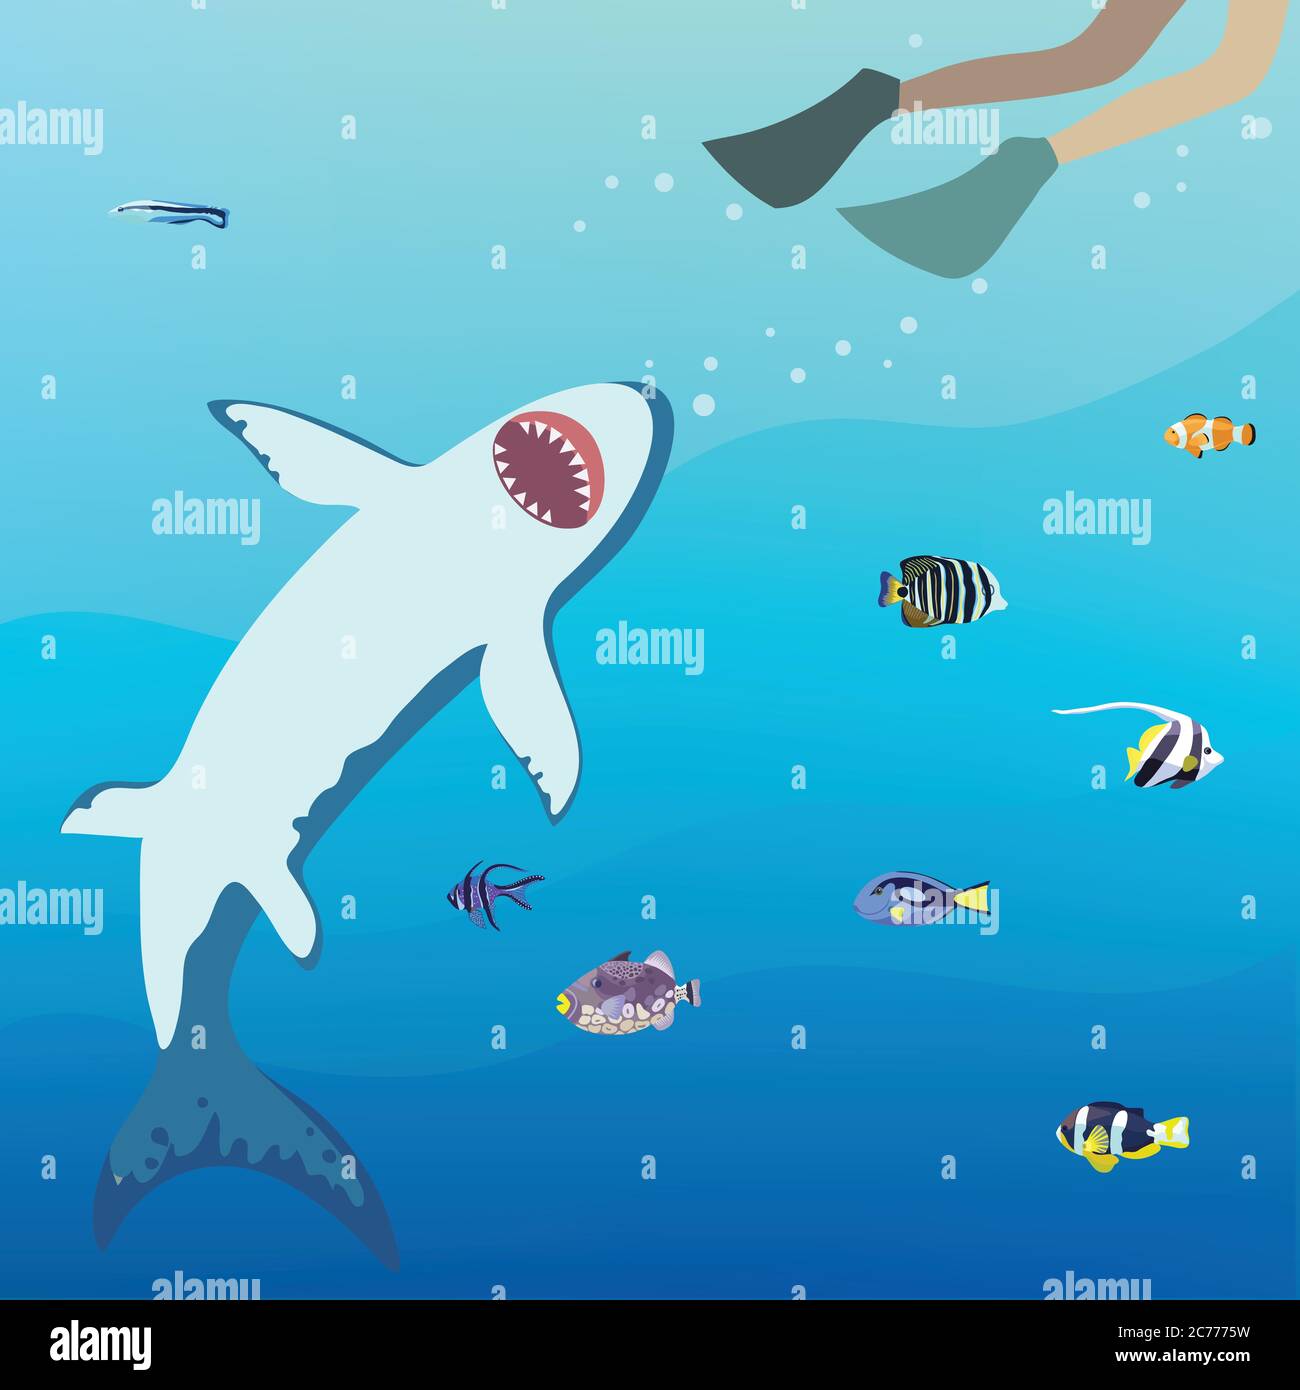 Lo squalo arrabbiato cerca di prendere il subacqueo. Illustrazione vettoriale. Illustrazione Vettoriale